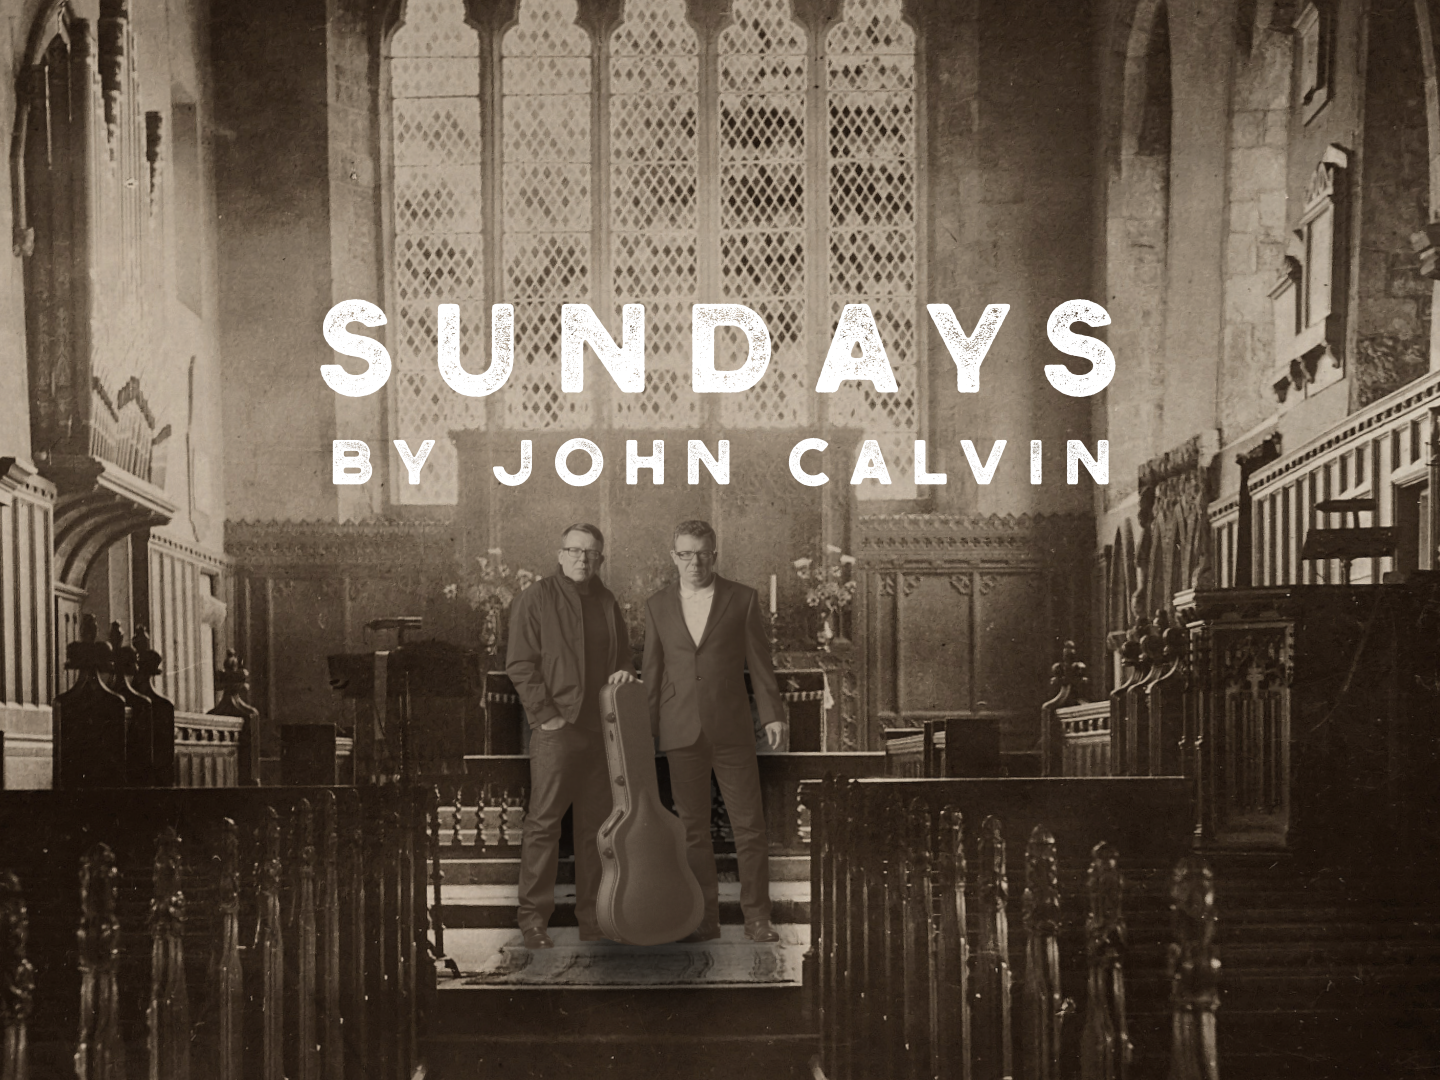 THE PROCLAIMERS – SUNDAYS BY JOHN CALVIN